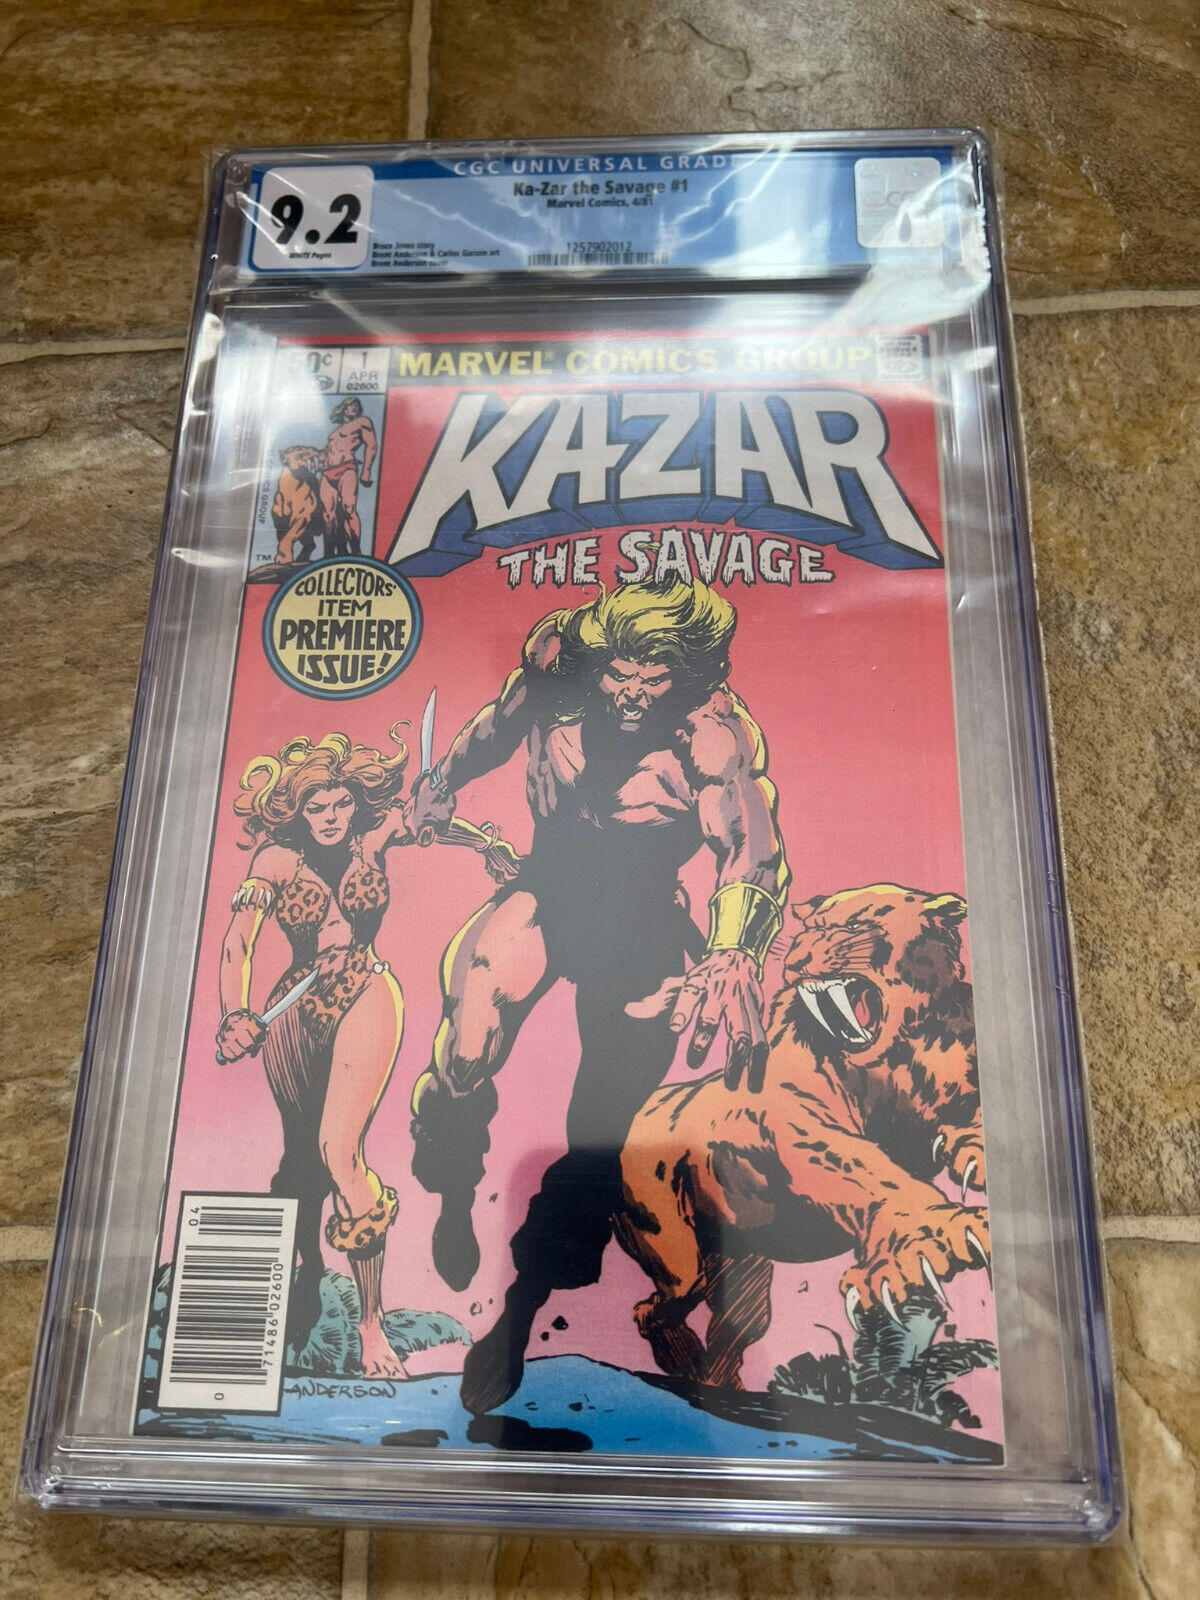 Ka-Zar the Savage #1 CGC 9.2